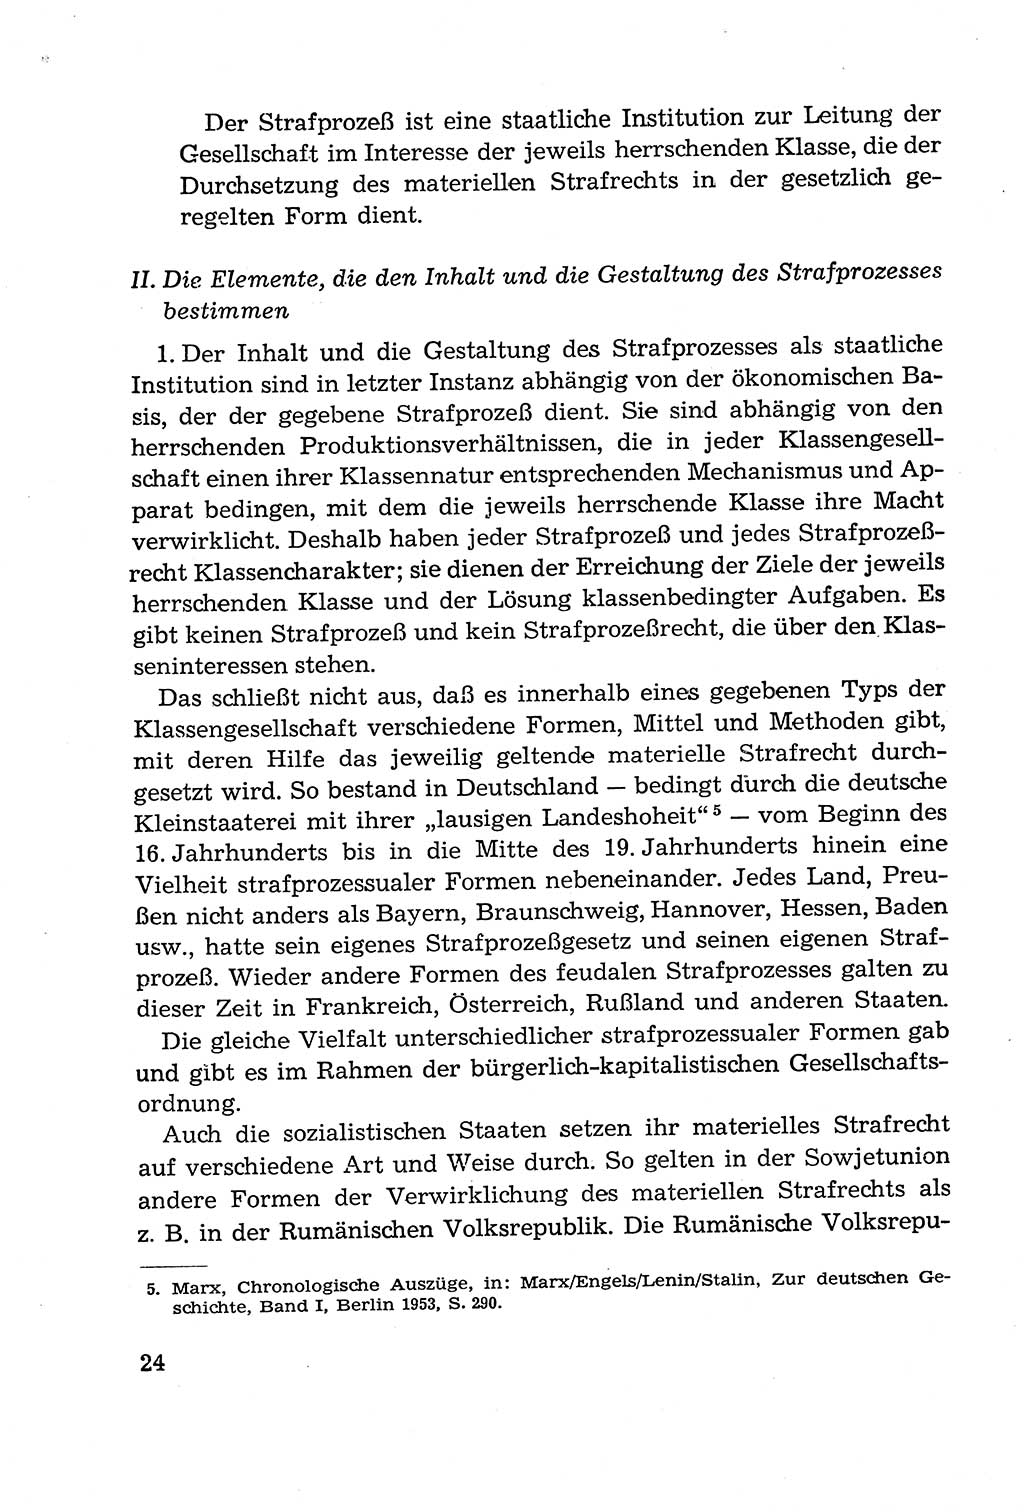 Leitfaden des Strafprozeßrechts der Deutschen Demokratischen Republik (DDR) 1959, Seite 24 (LF StPR DDR 1959, S. 24)